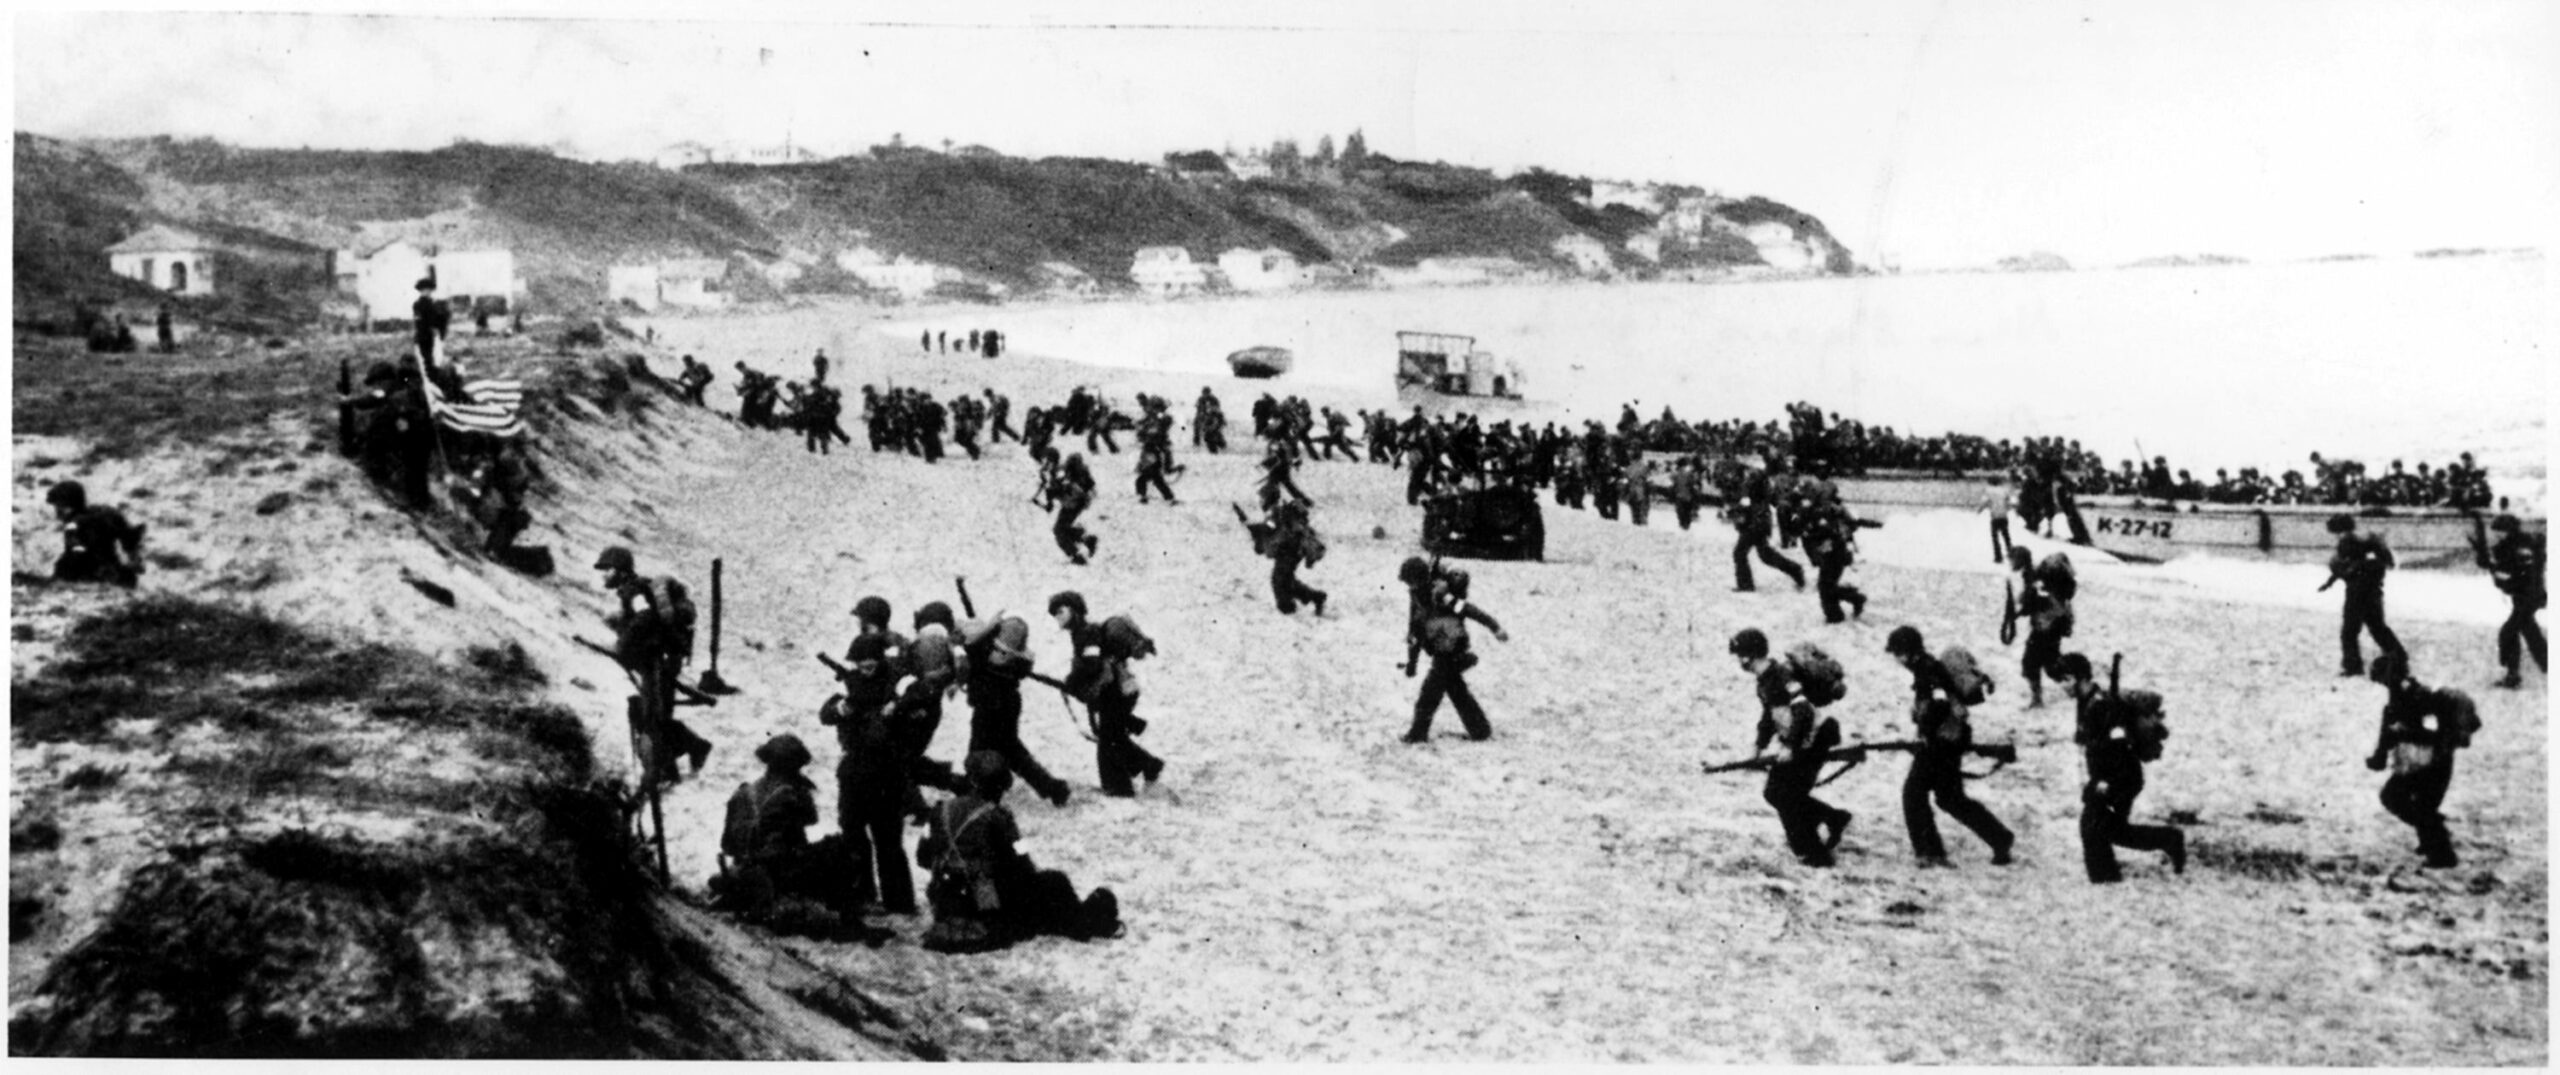 8 novembre 1942. Débarquement allié et Résistance en Afrique du Nord (colloque)